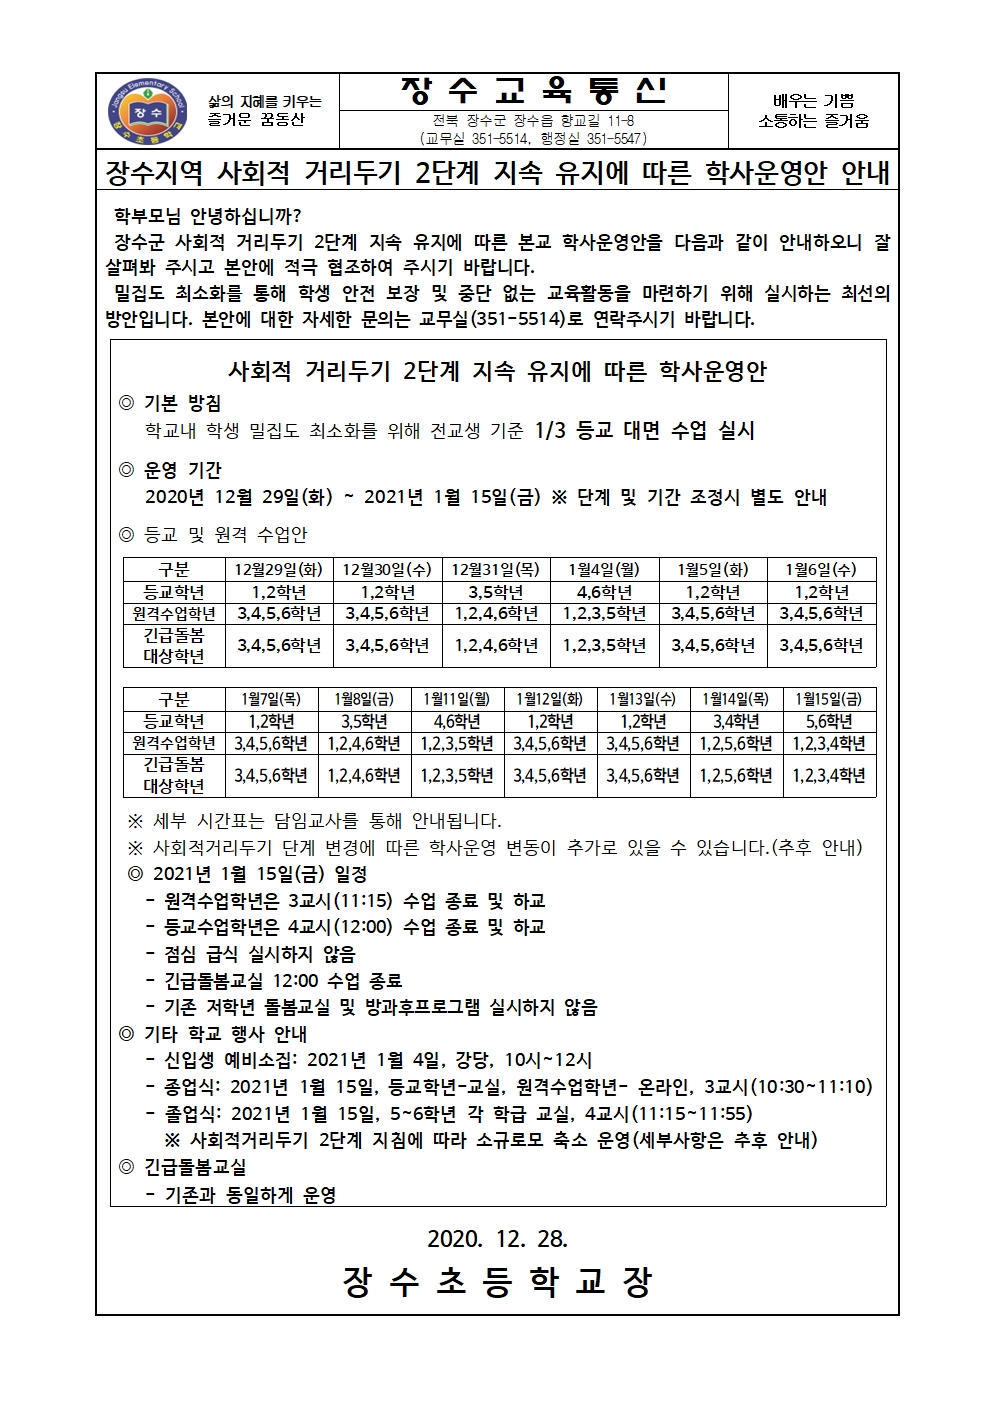 201228 붙임- 사회적 거리두기 2단계 유지에 따른 학사운영 변경 안내장001